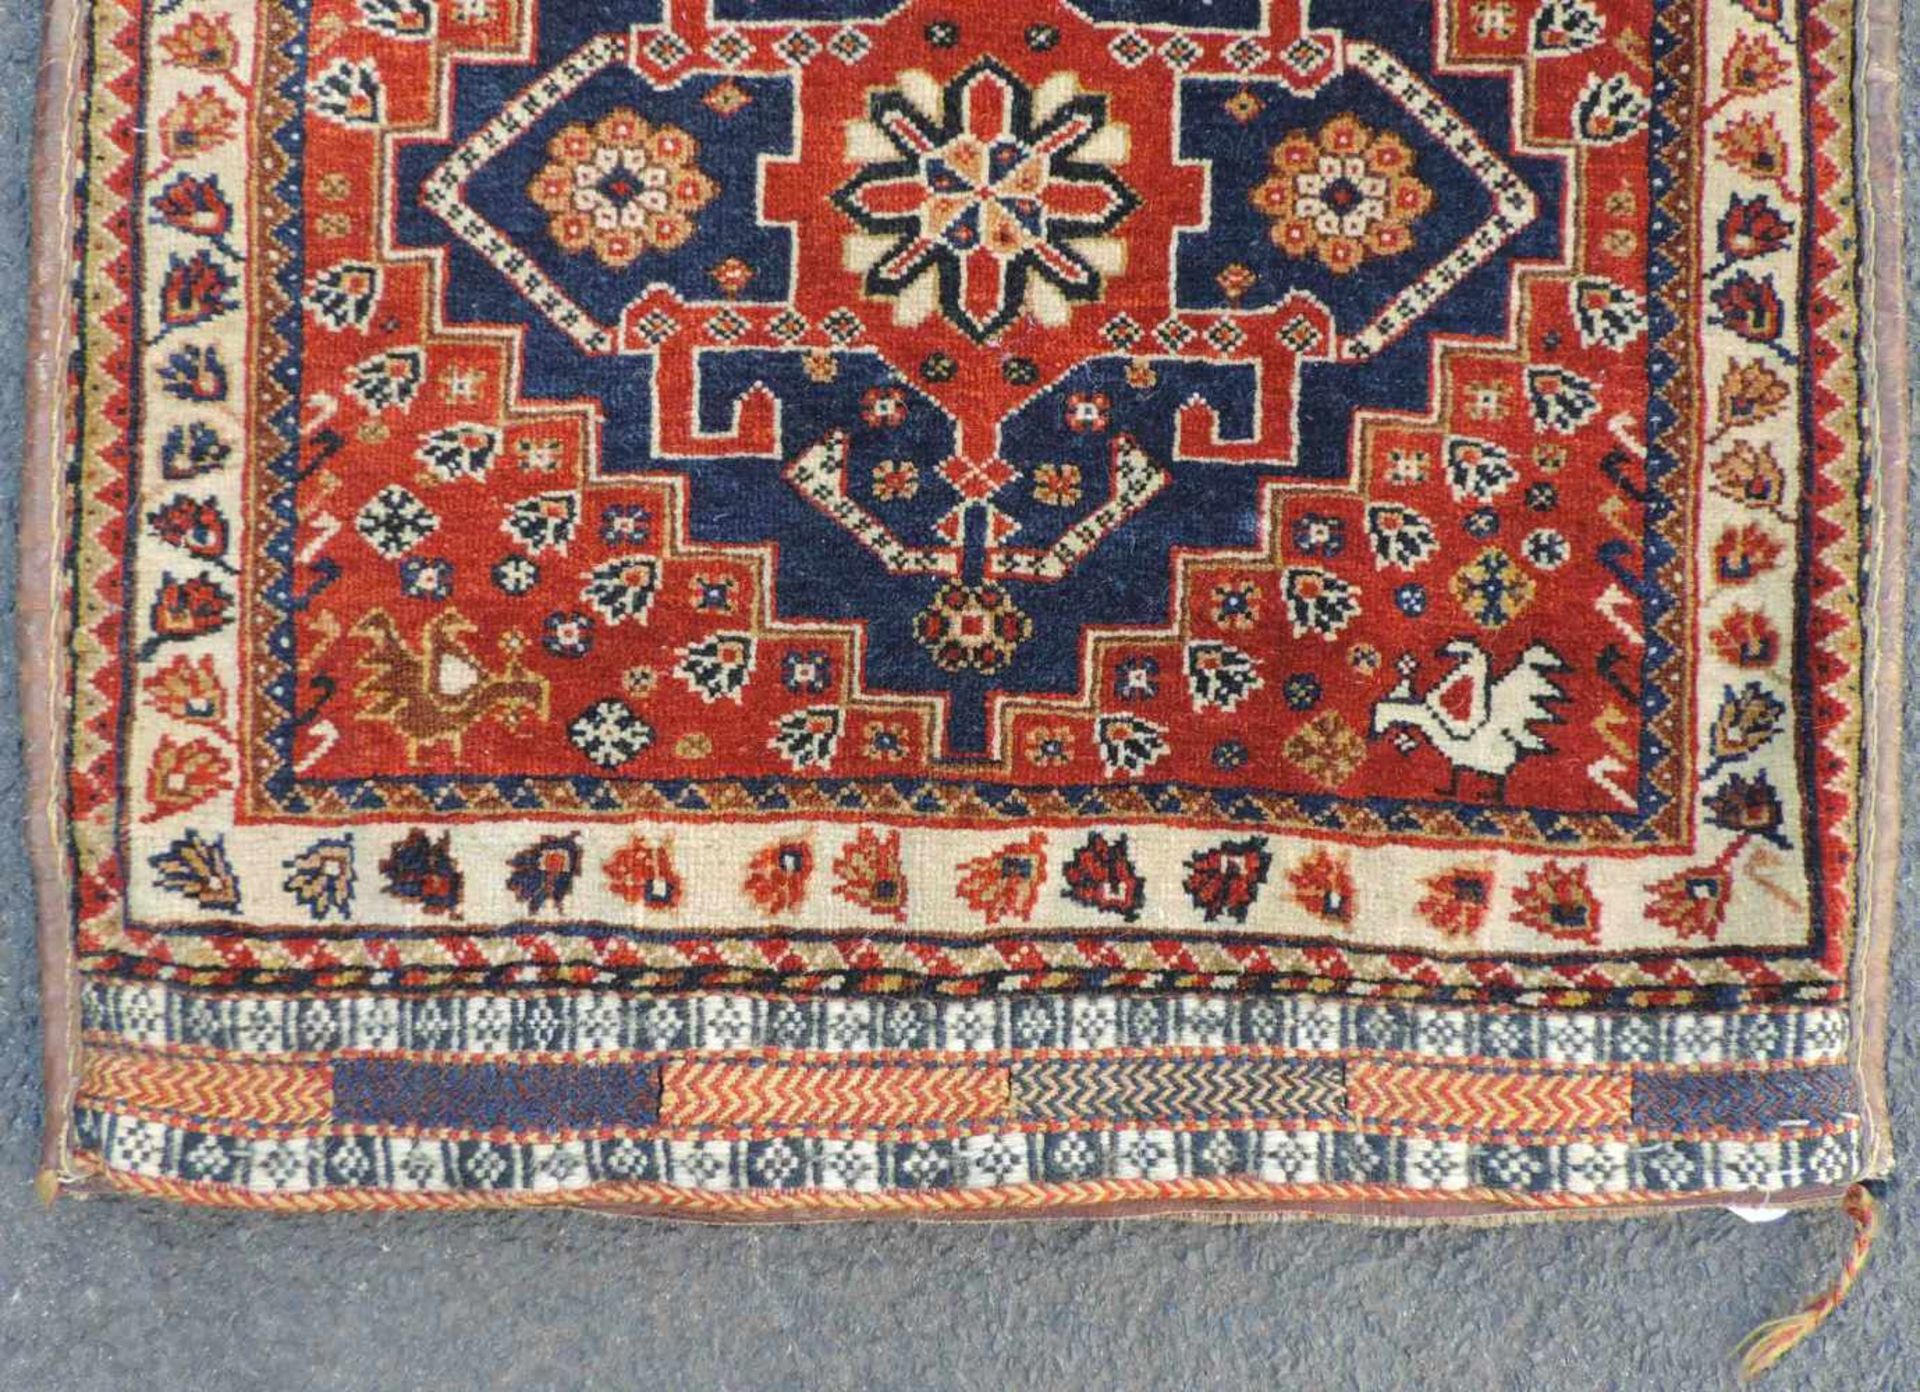 Qashqai / Kaschkai Perserteppich. Iran. Antik um 1910. Naturfarben.61 cm x 62 cm. Handgeknüpft. - Bild 2 aus 4